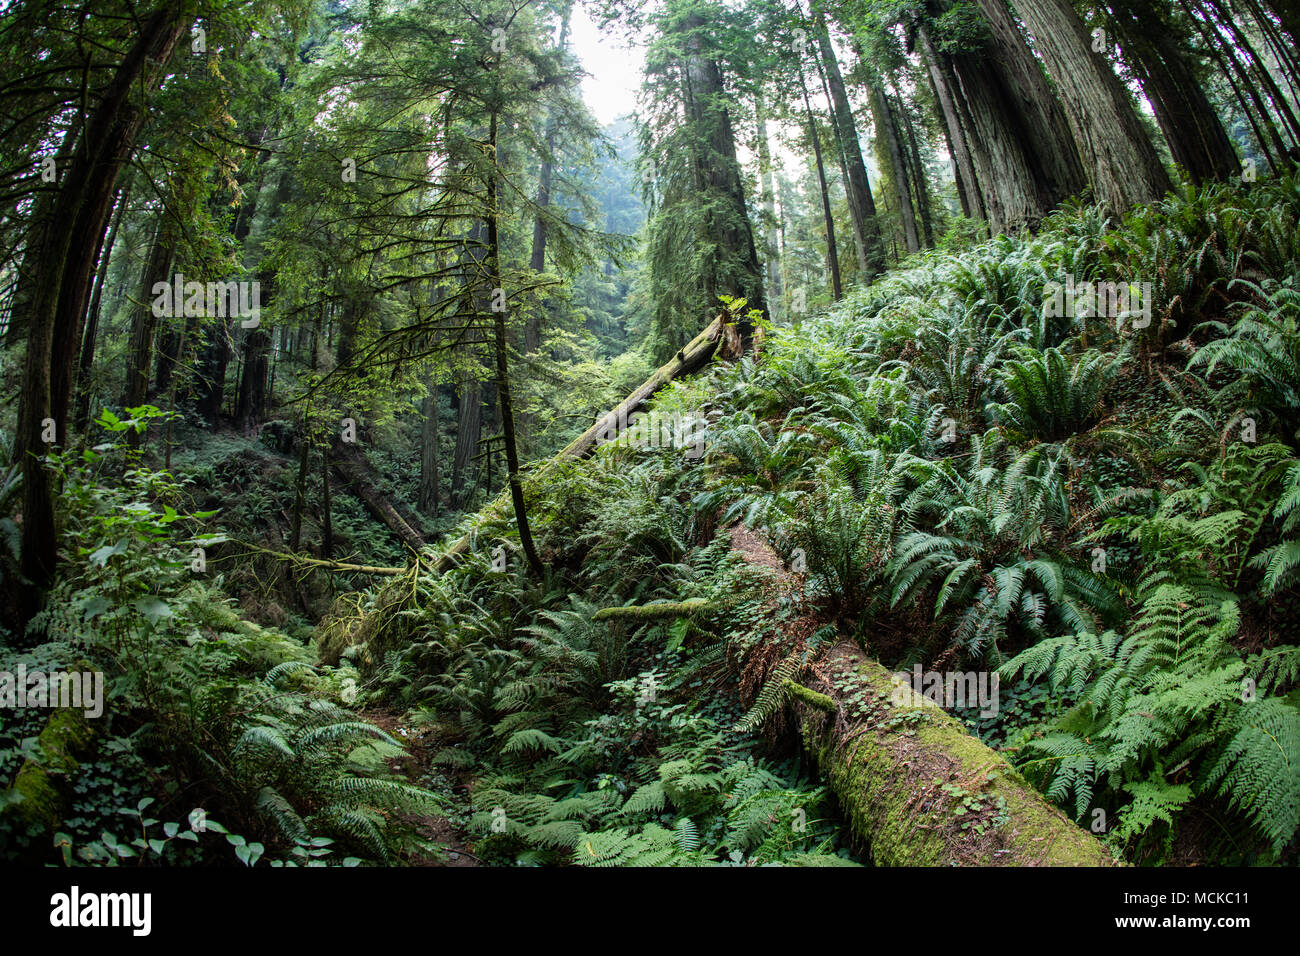 Pianta rigogliosa la crescita si verifica nel Parco Nazionale di Redwood in California del Nord. Questa zona è uno dei luoghi più belli della costa occidentale. Foto Stock